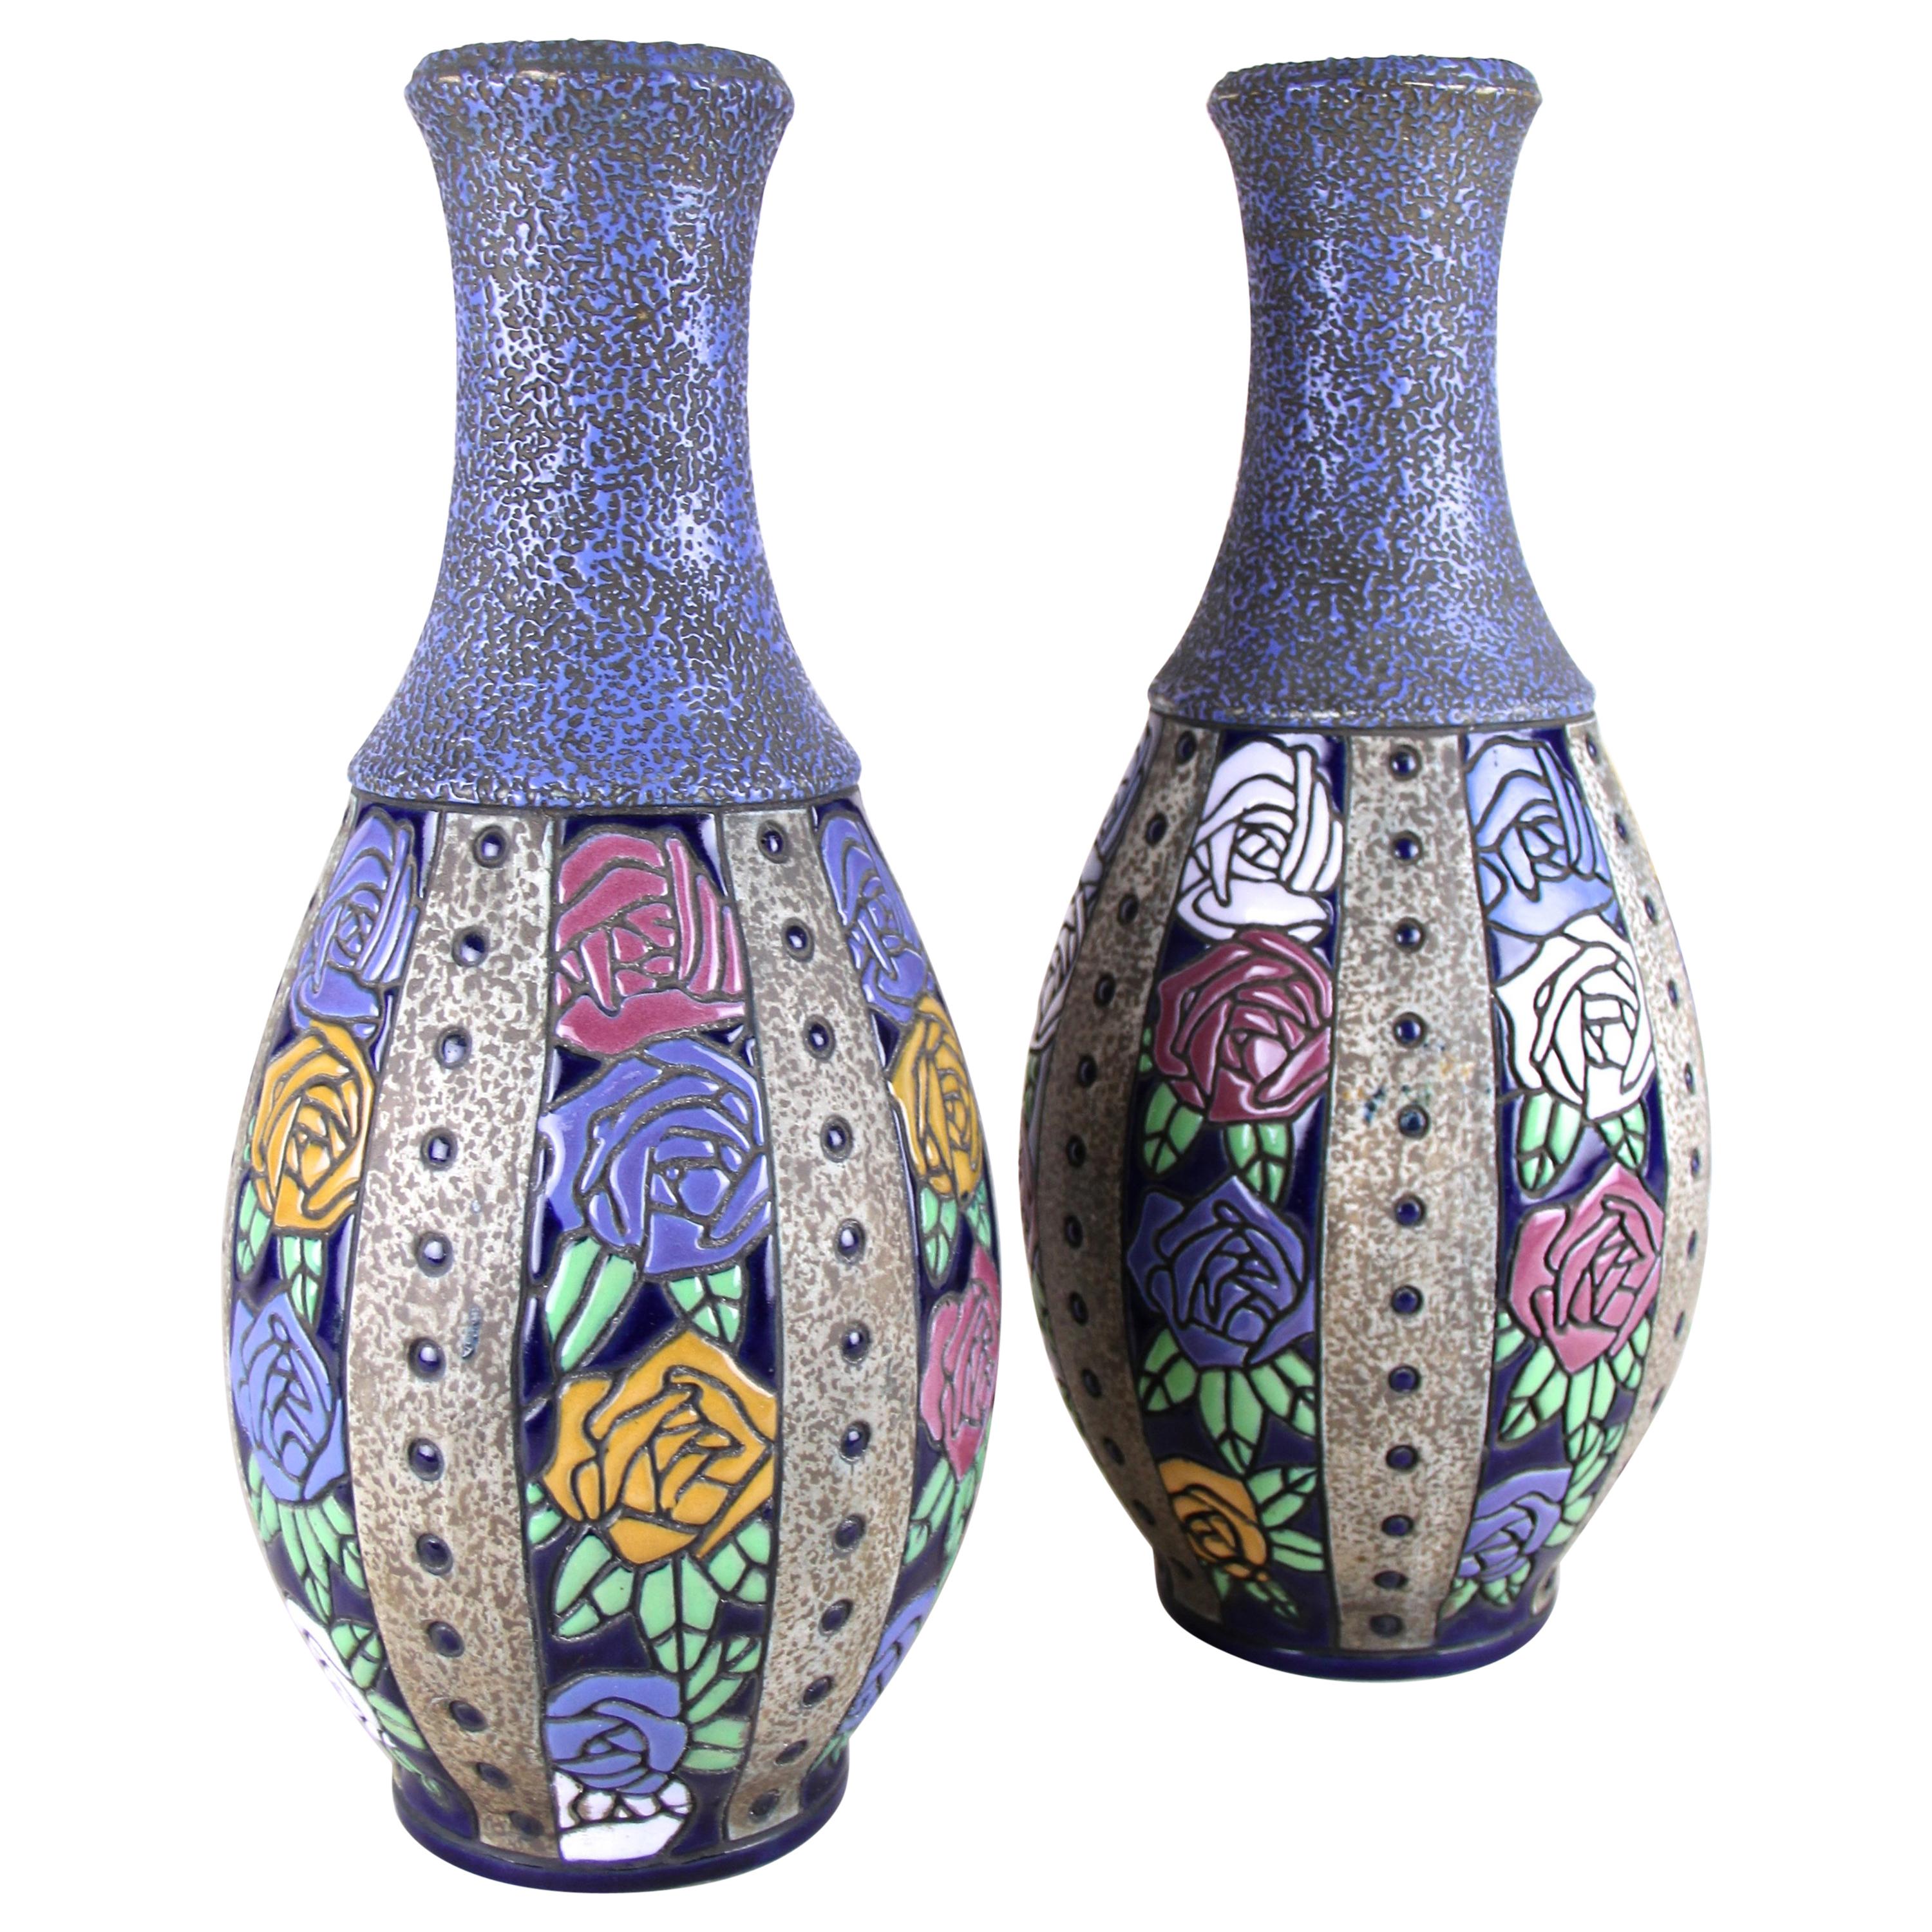 Pair of Art Nouveau Vases "Roses" by Amphora, CZ, circa 1915